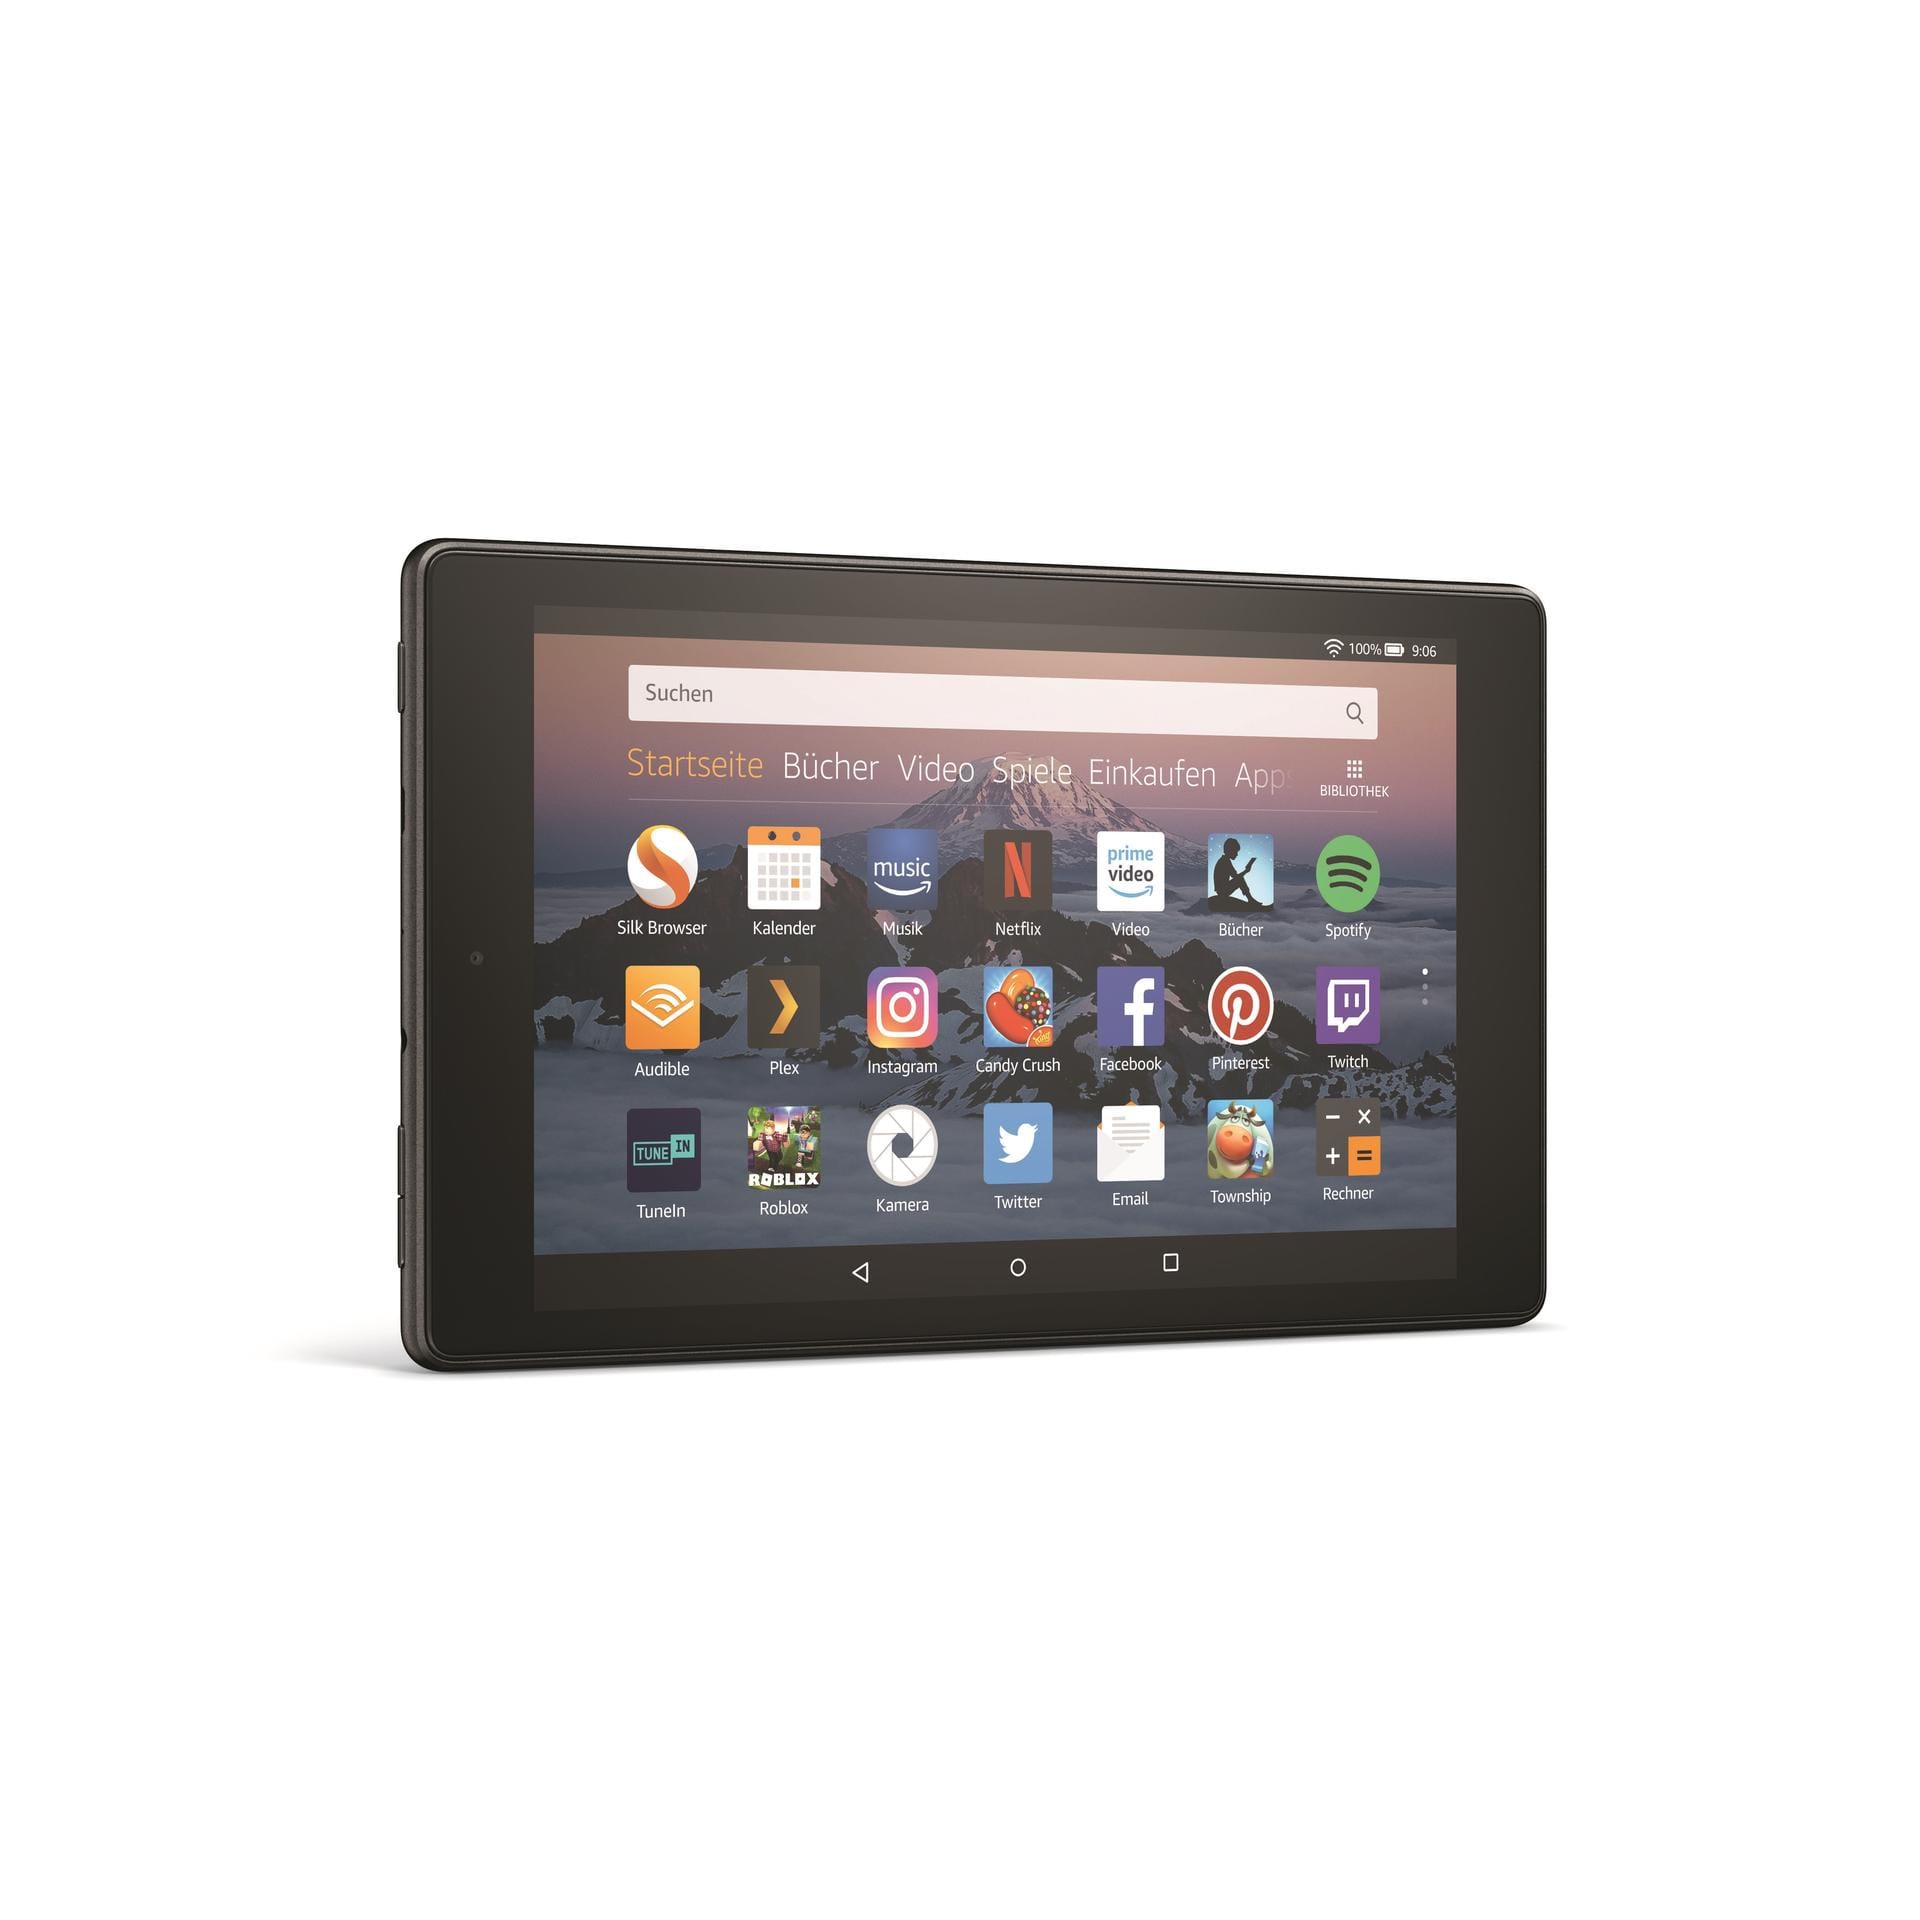 Amazon hat zwei neue Fire-HD-Tablets vorgestellt. Eine normale und und "Kids-Edition". Die beiden Geräte haben den Sprachassistenten "Alexa" an Bord.